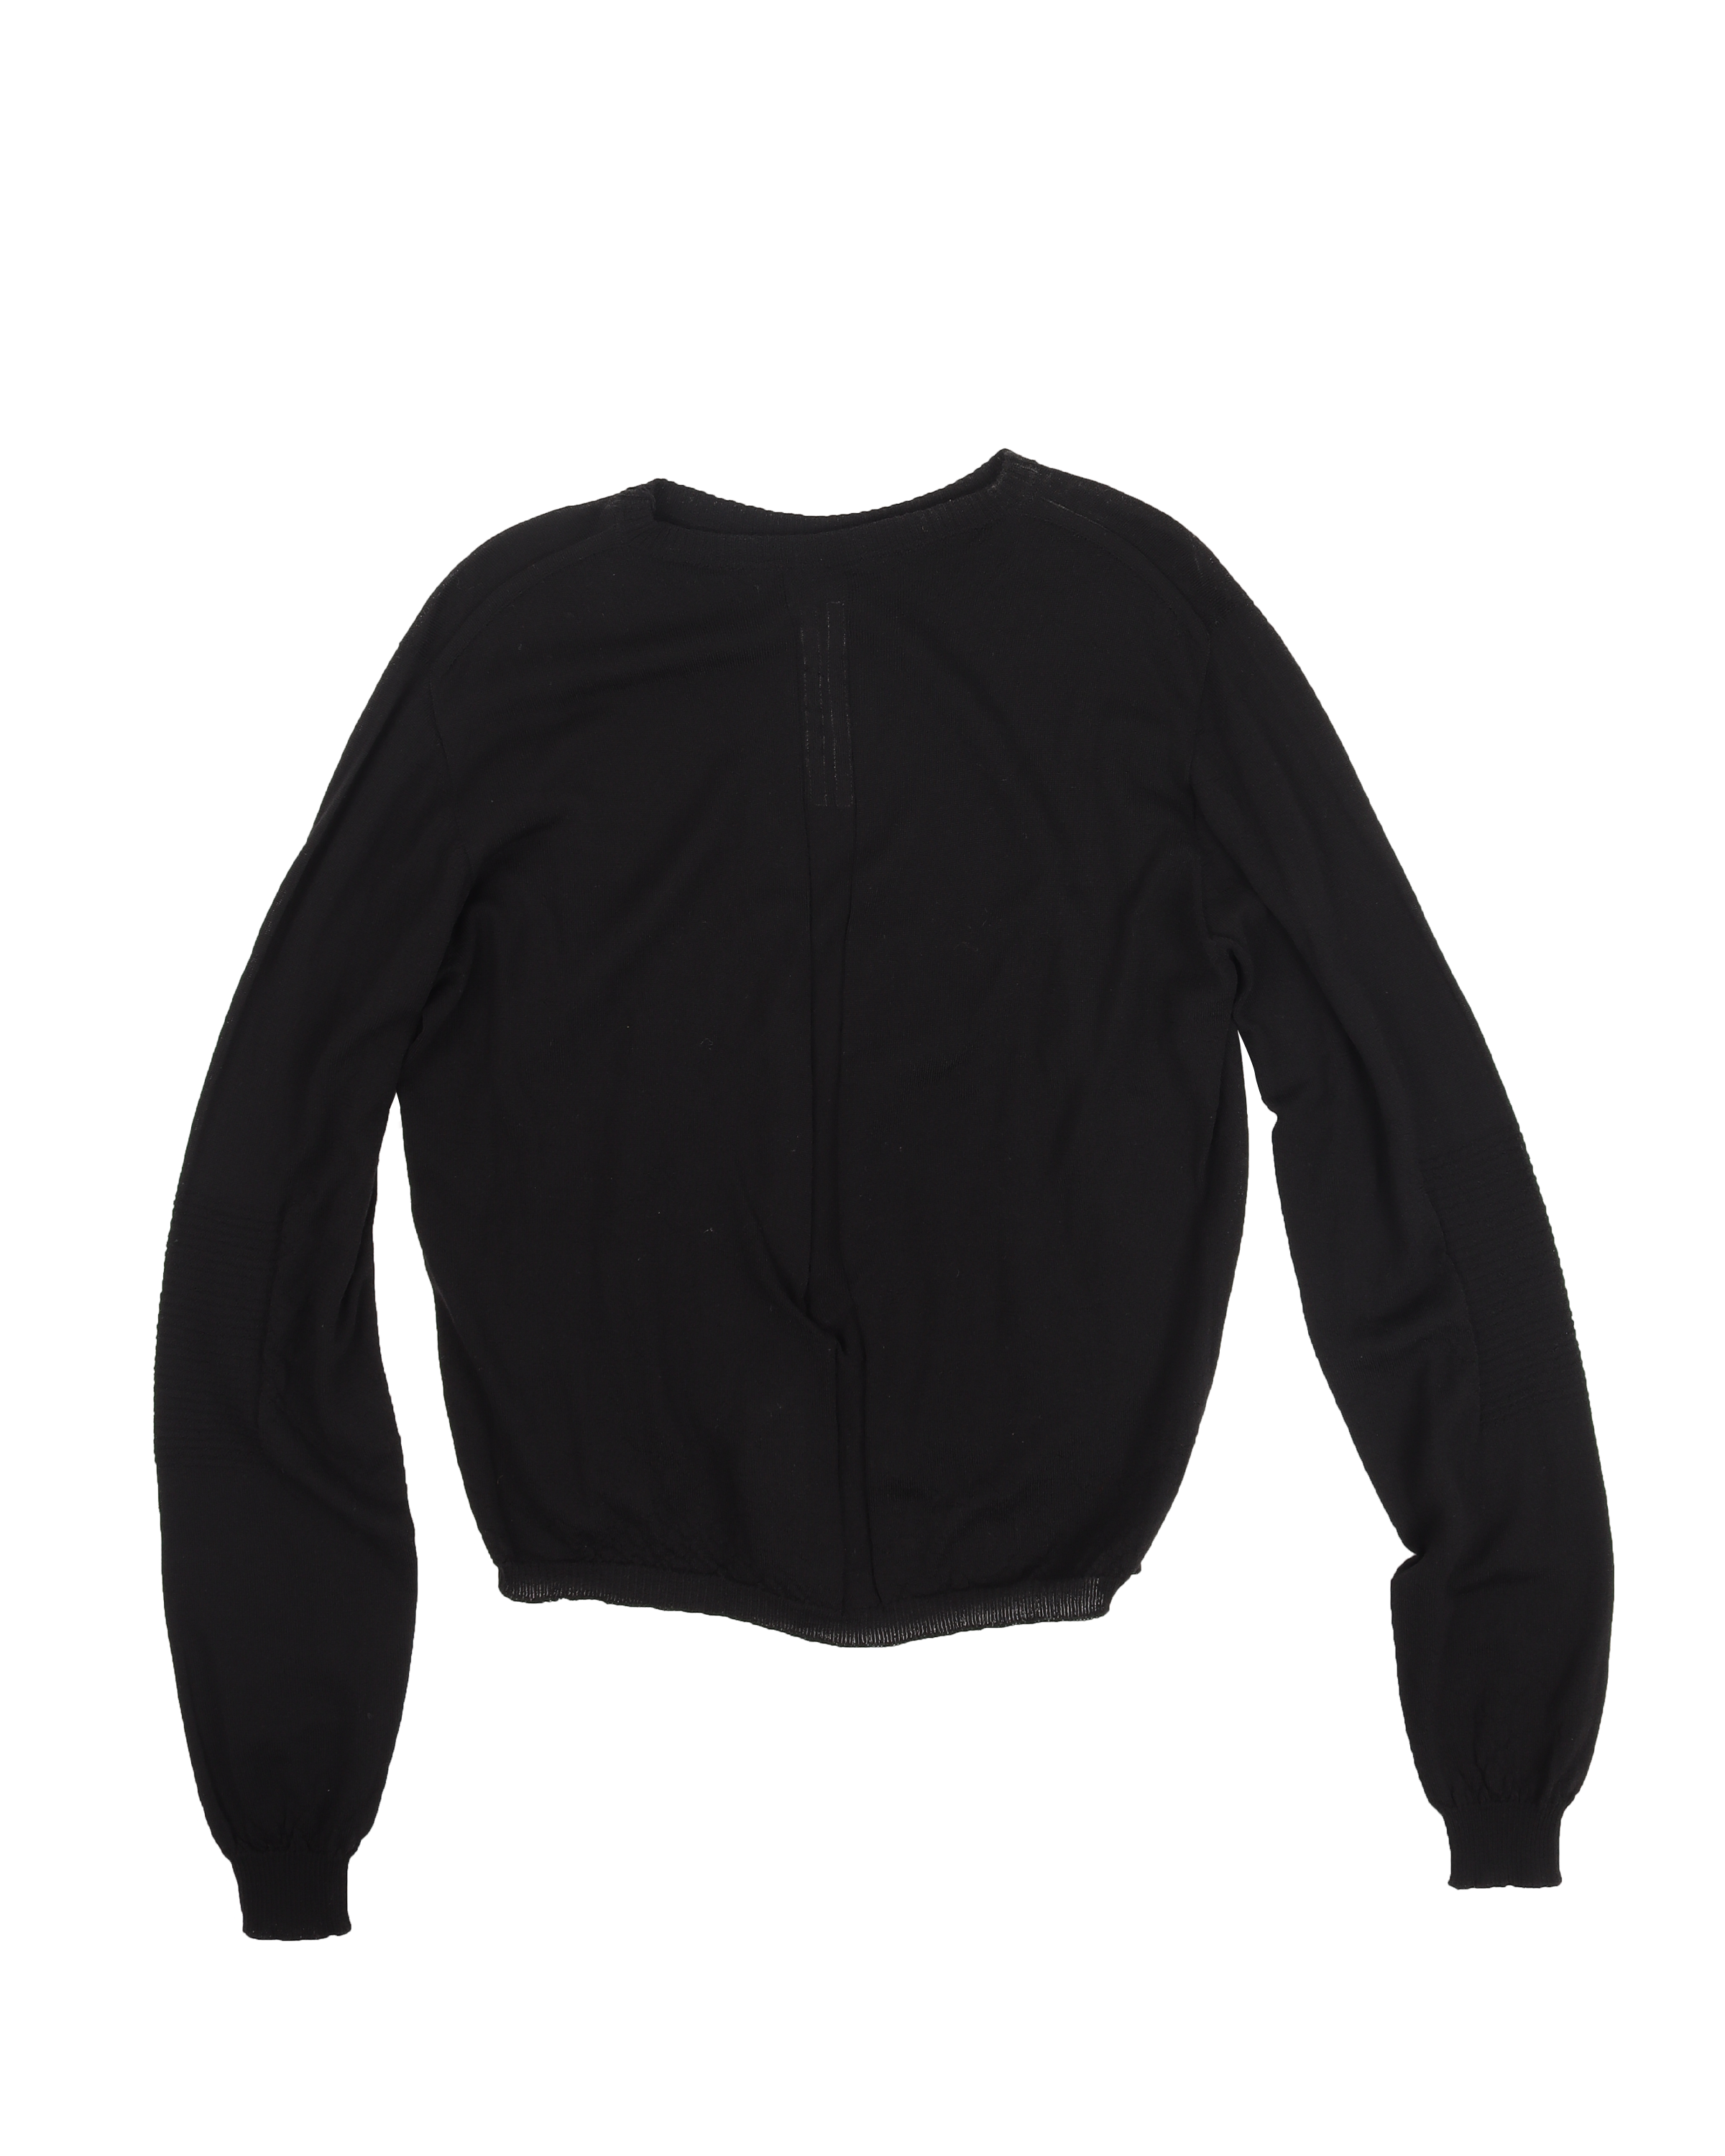 FW20 Oversized Cropped Biker Sweater (Black)